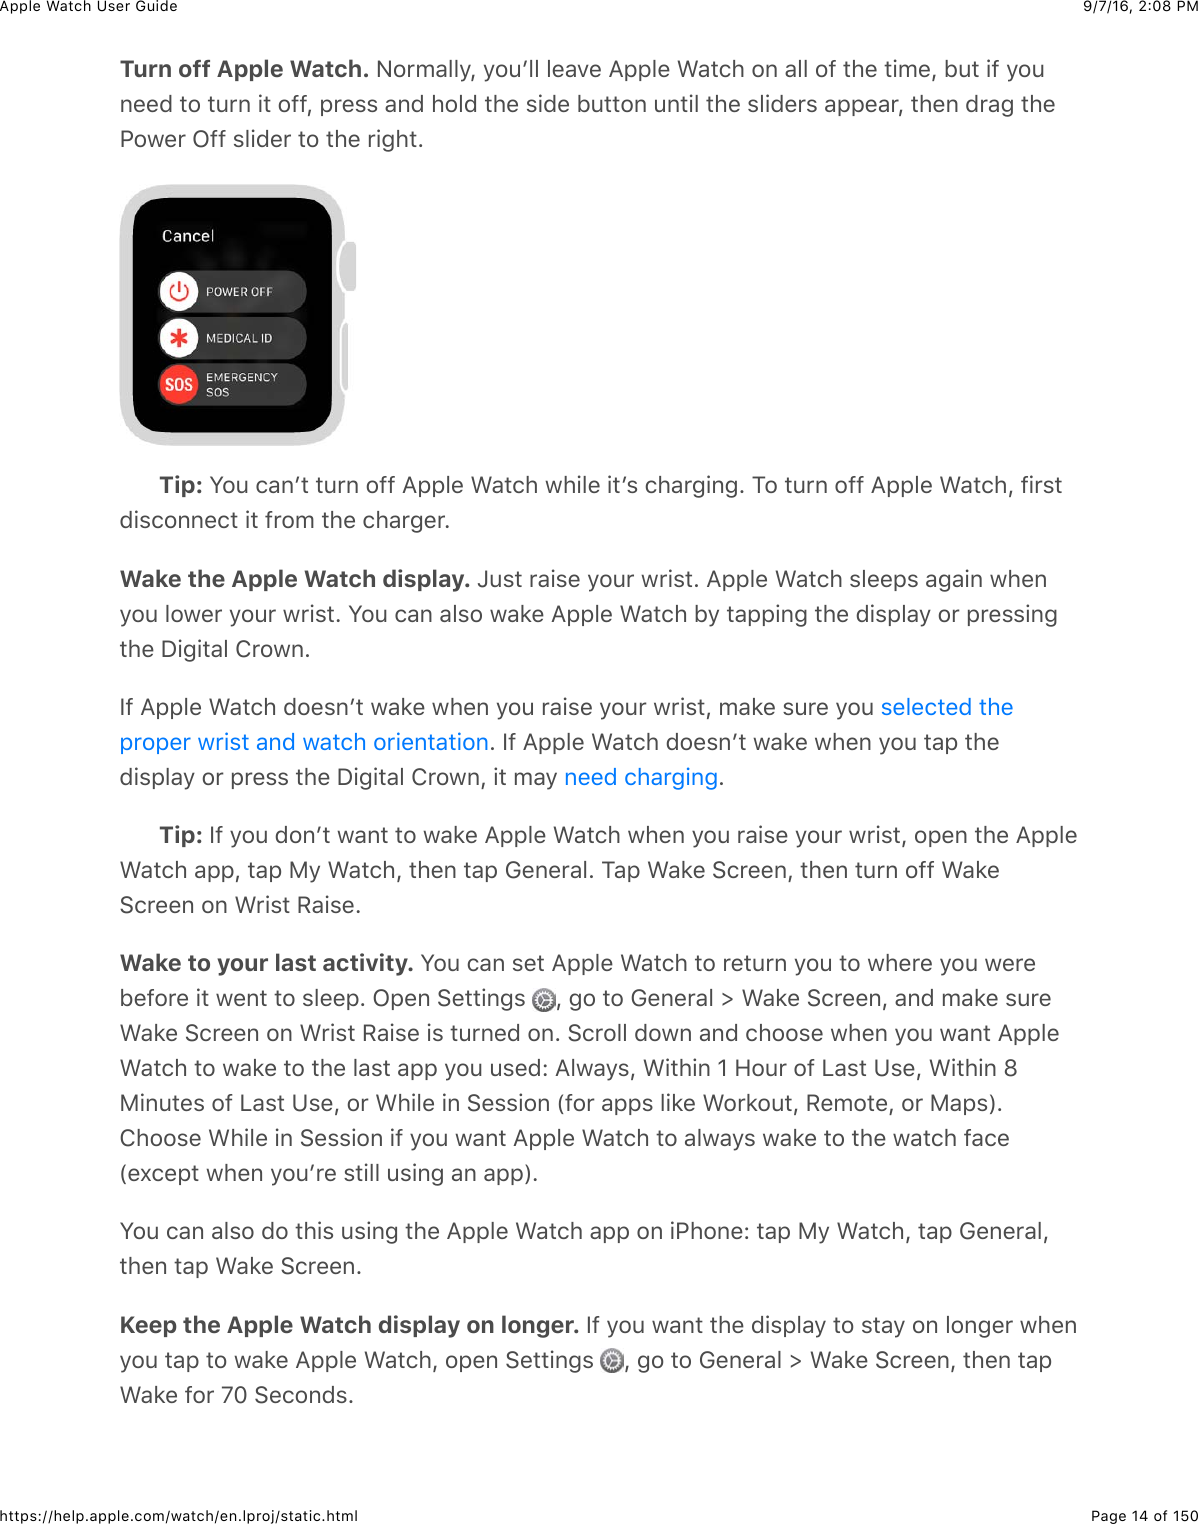 9/7/16, 2)08 PMApple Watch User GuidePage 14 of 150https://help.apple.com/watch/en.lproj/static.htmlTurn off Apple Watch. A#*5&apos;&quot;&quot;/J&amp;/#4W&quot;&quot;&amp;&quot;%&apos;.%&amp;=22&quot;%&amp;&gt;&apos;3()&amp;#,&amp;&apos;&quot;&quot;&amp;#@&amp;3)%&amp;3+5%J&amp;B43&amp;+@&amp;/#4,%%0&amp;3#&amp;34*,&amp;+3&amp;#@@J&amp;2*%$$&amp;&apos;,0&amp;)#&quot;0&amp;3)%&amp;$+0%&amp;B433#,&amp;4,3+&quot;&amp;3)%&amp;$&quot;+0%*$&amp;&apos;22%&apos;*J&amp;3)%,&amp;0*&apos;-&amp;3)%G#7%*&amp;L@@&amp;$&quot;+0%*&amp;3#&amp;3)%&amp;*+-)3CTip: S#4&amp;(&apos;,W3&amp;34*,&amp;#@@&amp;=22&quot;%&amp;&gt;&apos;3()&amp;7)+&quot;%&amp;+3W$&amp;()&apos;*-+,-C&amp;1#&amp;34*,&amp;#@@&amp;=22&quot;%&amp;&gt;&apos;3()J&amp;@+*$30+$(#,,%(3&amp;+3&amp;@*#5&amp;3)%&amp;()&apos;*-%*CWake the Apple Watch display. c4$3&amp;*&apos;+$%&amp;/#4*&amp;7*+$3C&amp;=22&quot;%&amp;&gt;&apos;3()&amp;$&quot;%%2$&amp;&apos;-&apos;+,&amp;7)%,/#4&amp;&quot;#7%*&amp;/#4*&amp;7*+$3C&amp;S#4&amp;(&apos;,&amp;&apos;&quot;$#&amp;7&apos;8%&amp;=22&quot;%&amp;&gt;&apos;3()&amp;B/&amp;3&apos;22+,-&amp;3)%&amp;0+$2&quot;&apos;/&amp;#*&amp;2*%$$+,-3)%&amp;I+-+3&apos;&quot;&amp;!*#7,CY@&amp;=22&quot;%&amp;&gt;&apos;3()&amp;0#%$,W3&amp;7&apos;8%&amp;7)%,&amp;/#4&amp;*&apos;+$%&amp;/#4*&amp;7*+$3J&amp;5&apos;8%&amp;$4*%&amp;/#4&amp;C&amp;Y@&amp;=22&quot;%&amp;&gt;&apos;3()&amp;0#%$,W3&amp;7&apos;8%&amp;7)%,&amp;/#4&amp;3&apos;2&amp;3)%0+$2&quot;&apos;/&amp;#*&amp;2*%$$&amp;3)%&amp;I+-+3&apos;&quot;&amp;!*#7,J&amp;+3&amp;5&apos;/&amp; CTip: Y@&amp;/#4&amp;0#,W3&amp;7&apos;,3&amp;3#&amp;7&apos;8%&amp;=22&quot;%&amp;&gt;&apos;3()&amp;7)%,&amp;/#4&amp;*&apos;+$%&amp;/#4*&amp;7*+$3J&amp;#2%,&amp;3)%&amp;=22&quot;%&gt;&apos;3()&amp;&apos;22J&amp;3&apos;2&amp;F/&amp;&gt;&apos;3()J&amp;3)%,&amp;3&apos;2&amp;D%,%*&apos;&quot;C&amp;1&apos;2&amp;&gt;&apos;8%&amp;6(*%%,J&amp;3)%,&amp;34*,&amp;#@@&amp;&gt;&apos;8%6(*%%,&amp;#,&amp;&gt;*+$3&amp;H&apos;+$%CWake to your last activity. S#4&amp;(&apos;,&amp;$%3&amp;=22&quot;%&amp;&gt;&apos;3()&amp;3#&amp;*%34*,&amp;/#4&amp;3#&amp;7)%*%&amp;/#4&amp;7%*%B%@#*%&amp;+3&amp;7%,3&amp;3#&amp;$&quot;%%2C&amp;L2%,&amp;6%33+,-$&amp; J&amp;-#&amp;3#&amp;D%,%*&apos;&quot;&amp;d&amp;&gt;&apos;8%&amp;6(*%%,J&amp;&apos;,0&amp;5&apos;8%&amp;$4*%&gt;&apos;8%&amp;6(*%%,&amp;#,&amp;&gt;*+$3&amp;H&apos;+$%&amp;+$&amp;34*,%0&amp;#,C&amp;6(*#&quot;&quot;&amp;0#7,&amp;&apos;,0&amp;()##$%&amp;7)%,&amp;/#4&amp;7&apos;,3&amp;=22&quot;%&gt;&apos;3()&amp;3#&amp;7&apos;8%&amp;3#&amp;3)%&amp;&quot;&apos;$3&amp;&apos;22&amp;/#4&amp;4$%0e&amp;=&quot;7&apos;/$J&amp;&gt;+3)+,&amp;]&amp;9#4*&amp;#@&amp;&lt;&apos;$3&amp;K$%J&amp;&gt;+3)+,&amp;fF+,43%$&amp;#@&amp;&lt;&apos;$3&amp;K$%J&amp;#*&amp;&gt;)+&quot;%&amp;+,&amp;6%$$+#,&amp;P@#*&amp;&apos;22$&amp;&quot;+8%&amp;&gt;#*8#43J&amp;H%5#3%J&amp;#*&amp;F&apos;2$RC!)##$%&amp;&gt;)+&quot;%&amp;+,&amp;6%$$+#,&amp;+@&amp;/#4&amp;7&apos;,3&amp;=22&quot;%&amp;&gt;&apos;3()&amp;3#&amp;&apos;&quot;7&apos;/$&amp;7&apos;8%&amp;3#&amp;3)%&amp;7&apos;3()&amp;@&apos;(%P%U(%23&amp;7)%,&amp;/#4W*%&amp;$3+&quot;&quot;&amp;4$+,-&amp;&apos;,&amp;&apos;22RCS#4&amp;(&apos;,&amp;&apos;&quot;$#&amp;0#&amp;3)+$&amp;4$+,-&amp;3)%&amp;=22&quot;%&amp;&gt;&apos;3()&amp;&apos;22&amp;#,&amp;+G)#,%e&amp;3&apos;2&amp;F/&amp;&gt;&apos;3()J&amp;3&apos;2&amp;D%,%*&apos;&quot;J3)%,&amp;3&apos;2&amp;&gt;&apos;8%&amp;6(*%%,CKeep the Apple Watch display on longer. Y@&amp;/#4&amp;7&apos;,3&amp;3)%&amp;0+$2&quot;&apos;/&amp;3#&amp;$3&apos;/&amp;#,&amp;&quot;#,-%*&amp;7)%,/#4&amp;3&apos;2&amp;3#&amp;7&apos;8%&amp;=22&quot;%&amp;&gt;&apos;3()J&amp;#2%,&amp;6%33+,-$&amp; J&amp;-#&amp;3#&amp;D%,%*&apos;&quot;&amp;d&amp;&gt;&apos;8%&amp;6(*%%,J&amp;3)%,&amp;3&apos;2&gt;&apos;8%&amp;@#*&amp;g^&amp;6%(#,0$C$%&quot;%(3%0&amp;3)%2*#2%*&amp;7*+$3&amp;&apos;,0&amp;7&apos;3()&amp;#*+%,3&apos;3+#,,%%0&amp;()&apos;*-+,-